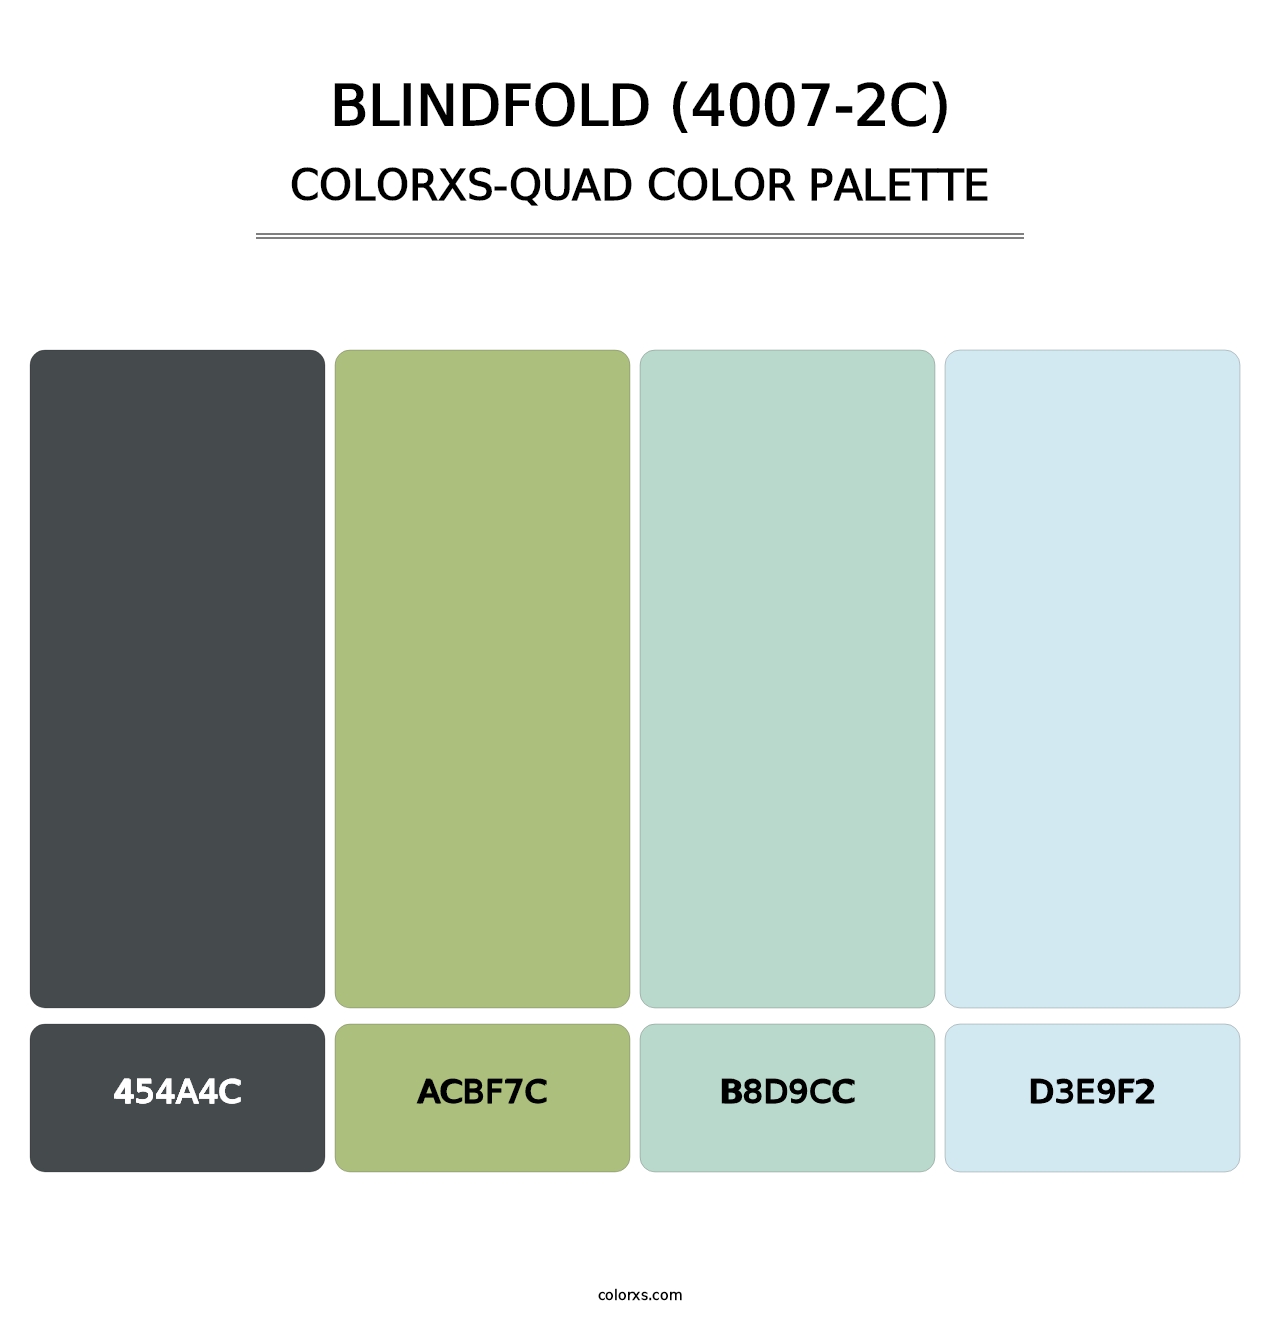 Blindfold (4007-2C) - Colorxs Quad Palette